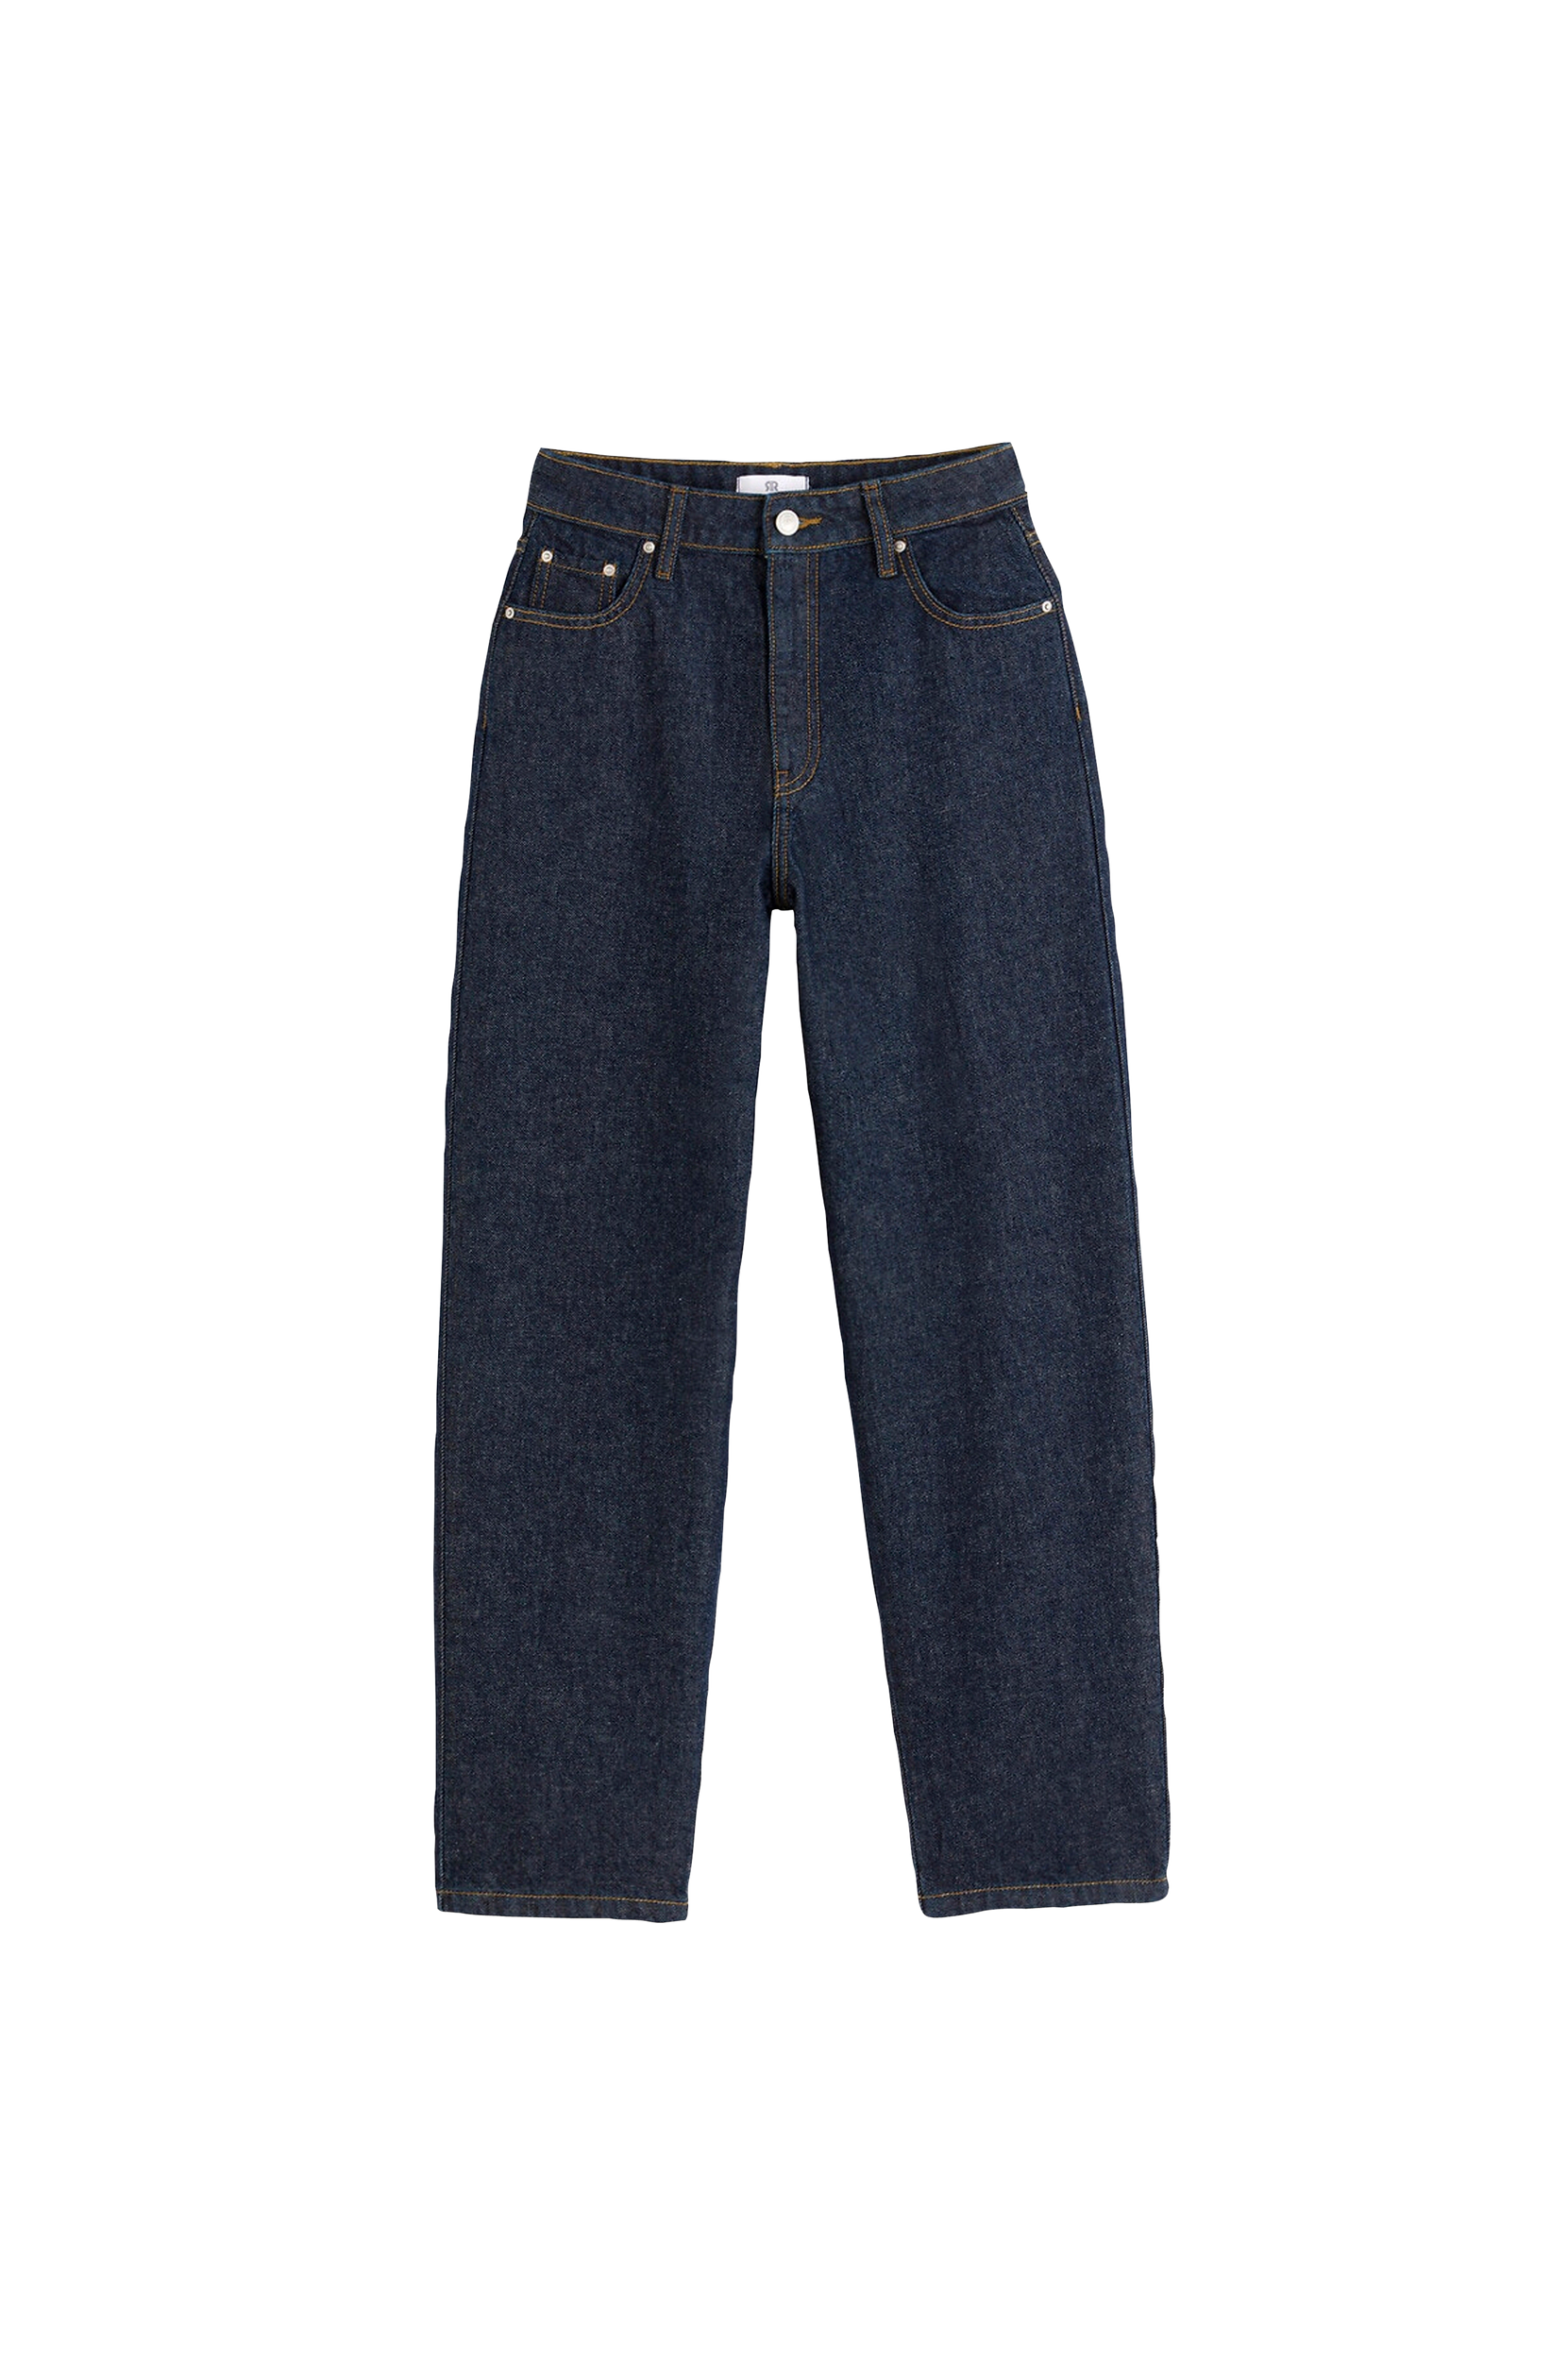 La Redoute - Vide jeans i rådenim med høj talje - Blå - 32